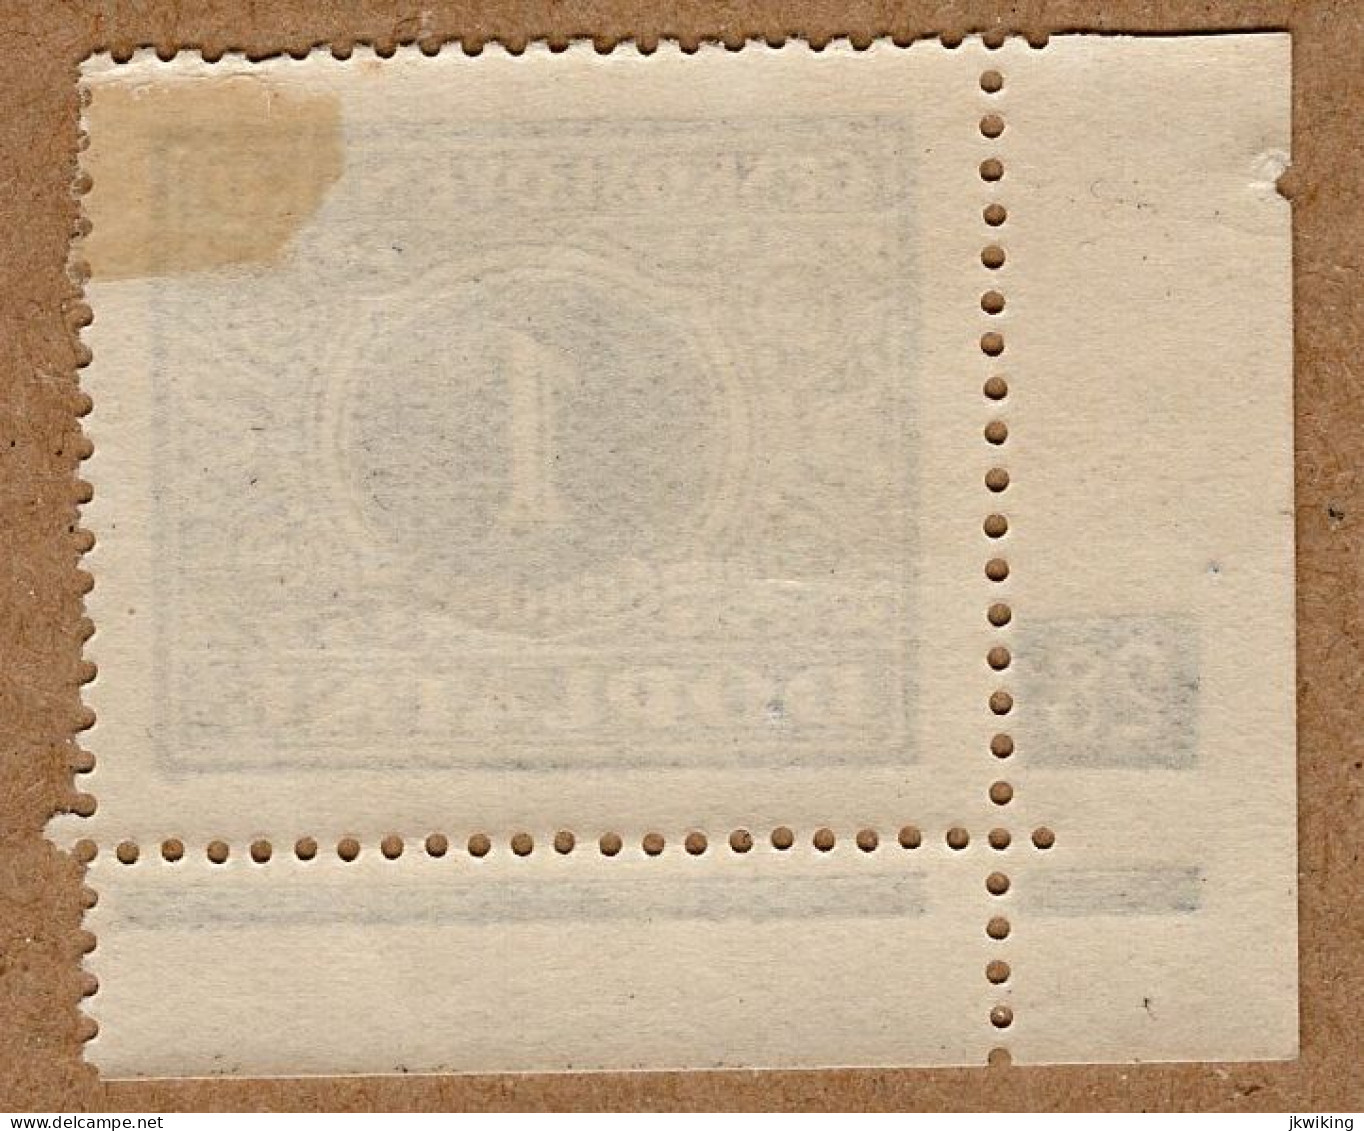 1928 - Doplatní - Definitivní Vydání - č. DL62 - Deskové číslo - Ungebraucht